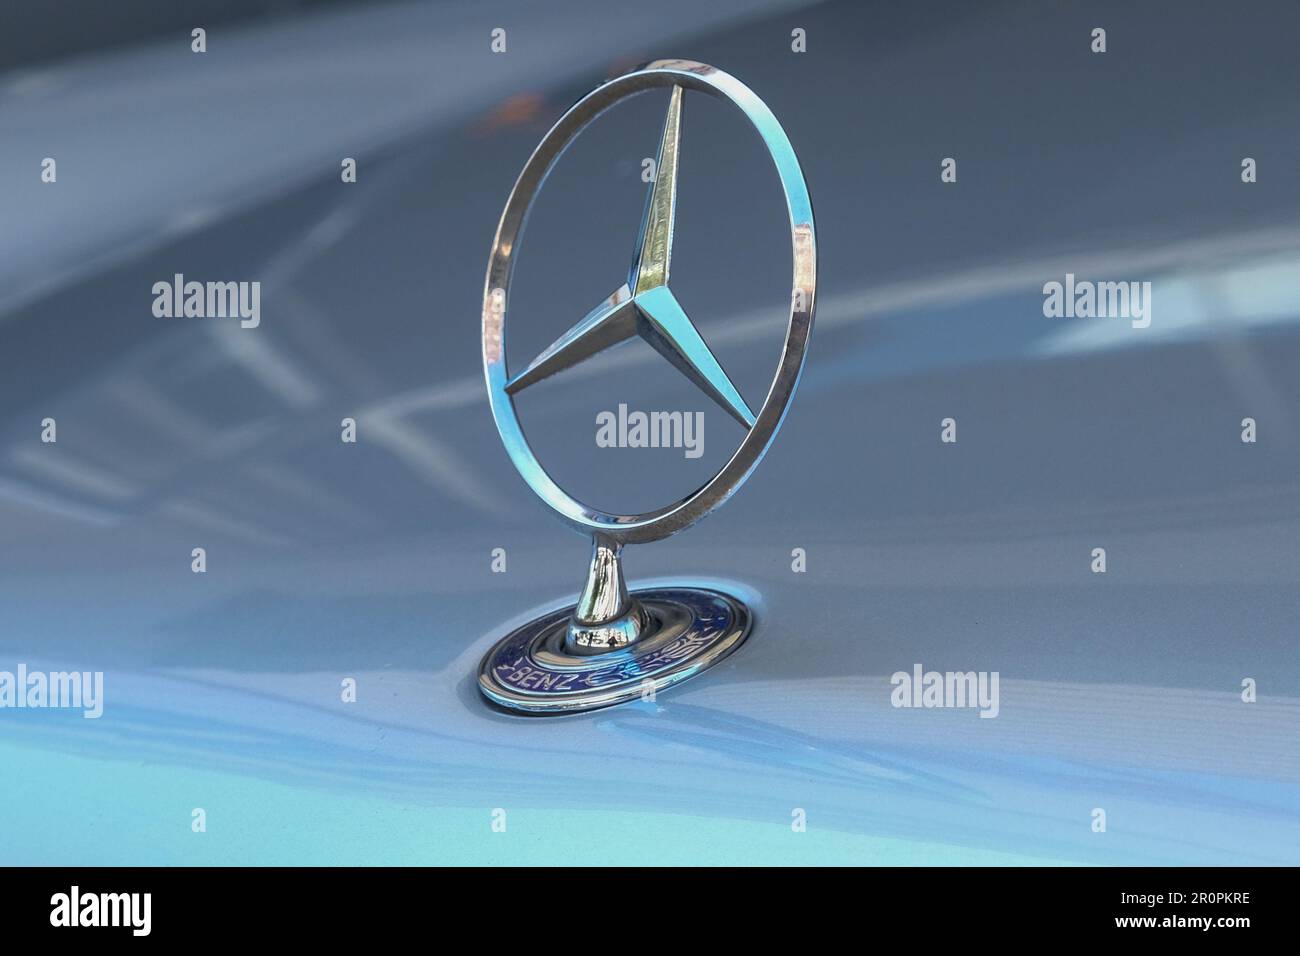 Primo piano del vecchio logo vintage metal star originale di Mercedes Benz sul cofano dell'auto. Messa a fuoco selettiva del vecchio logo Mercedes. Foto Stock